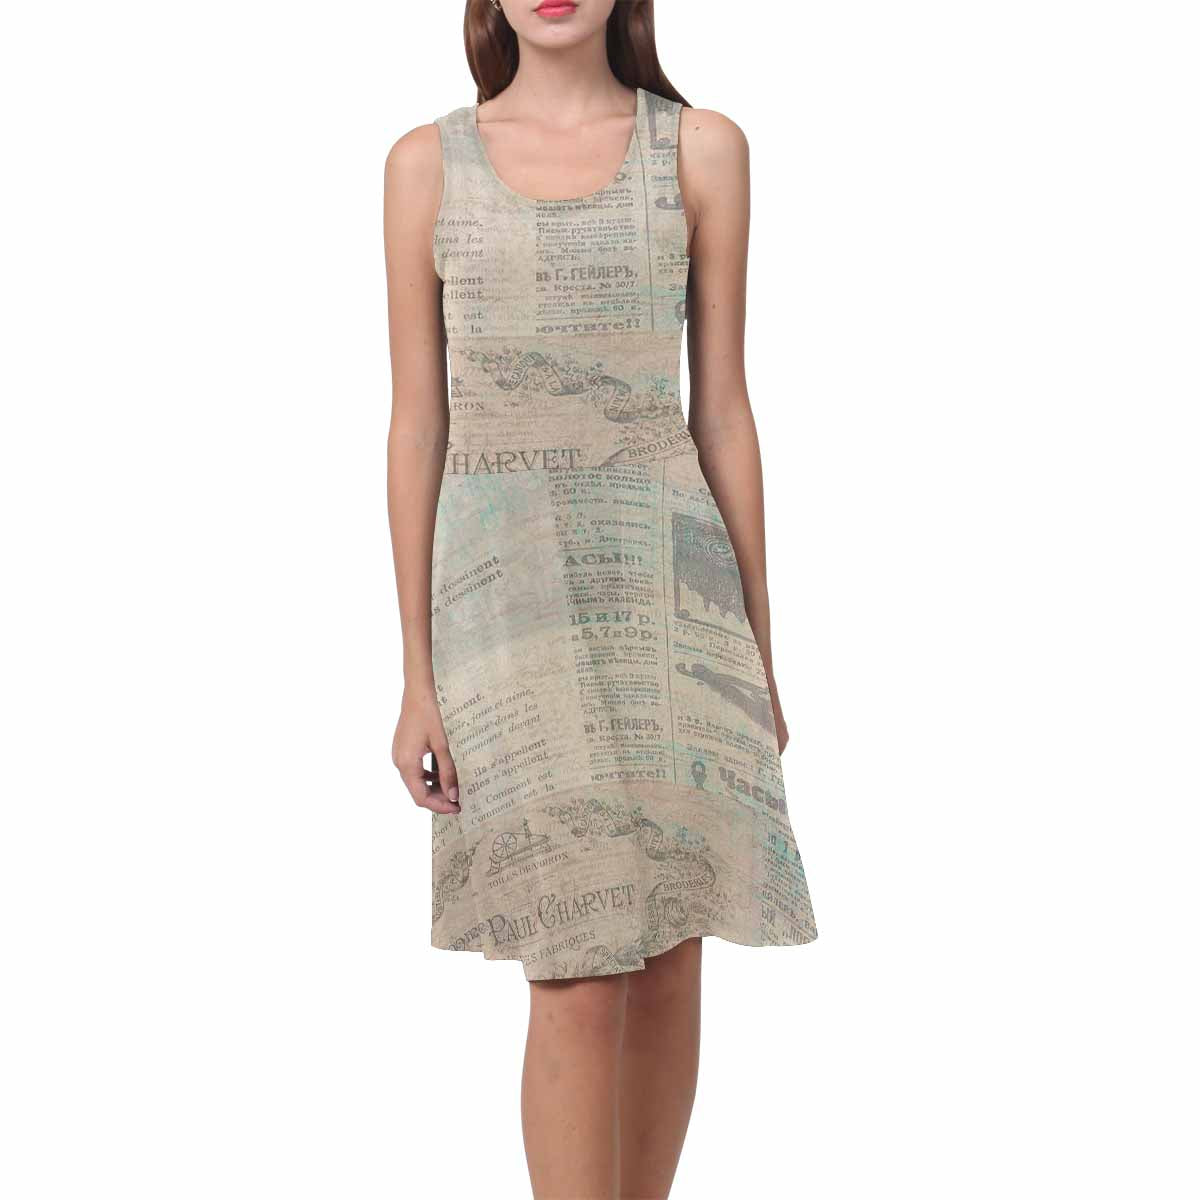 Antique General summer dress, MODEL 09534, design 26